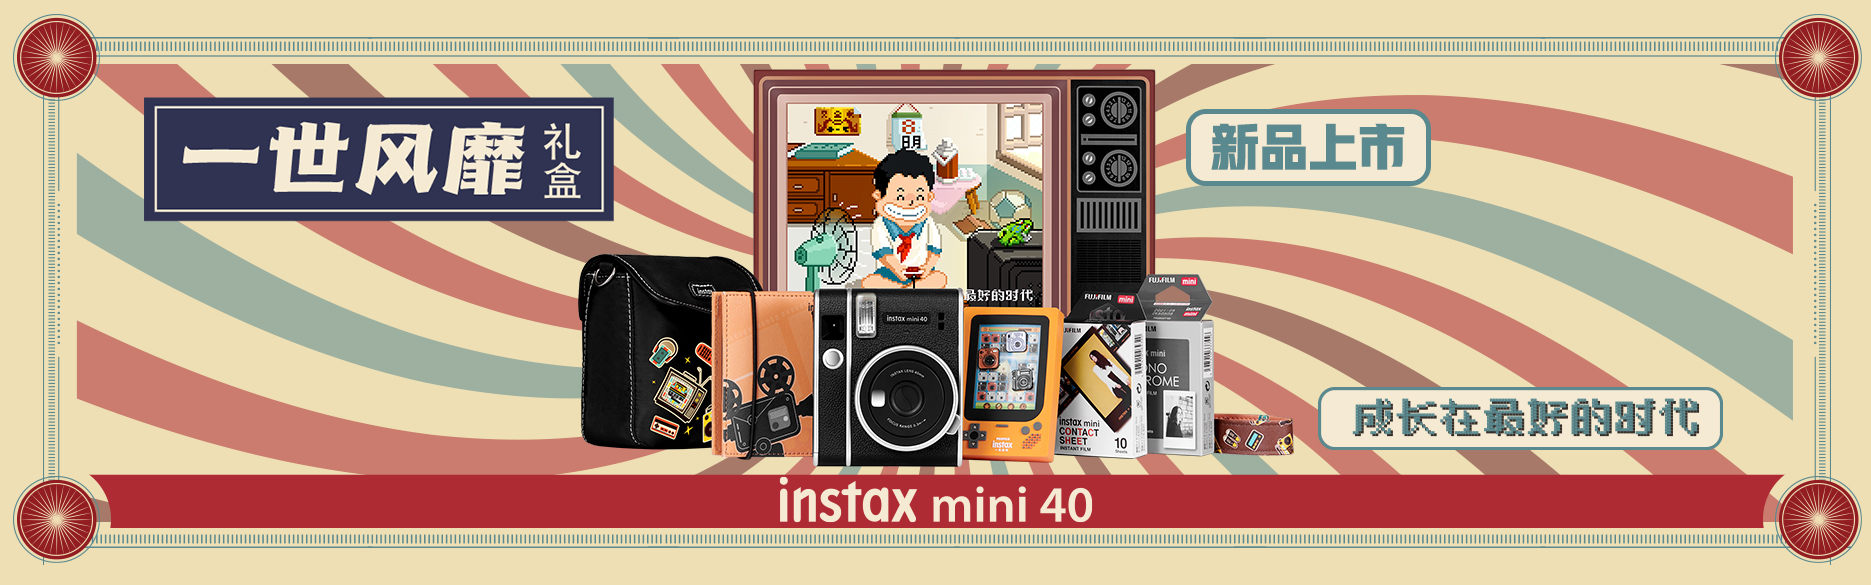 instax mini40，富士instax mini40，富士mini40，mini40礼盒，instax新礼盒，富士instax新品礼盒